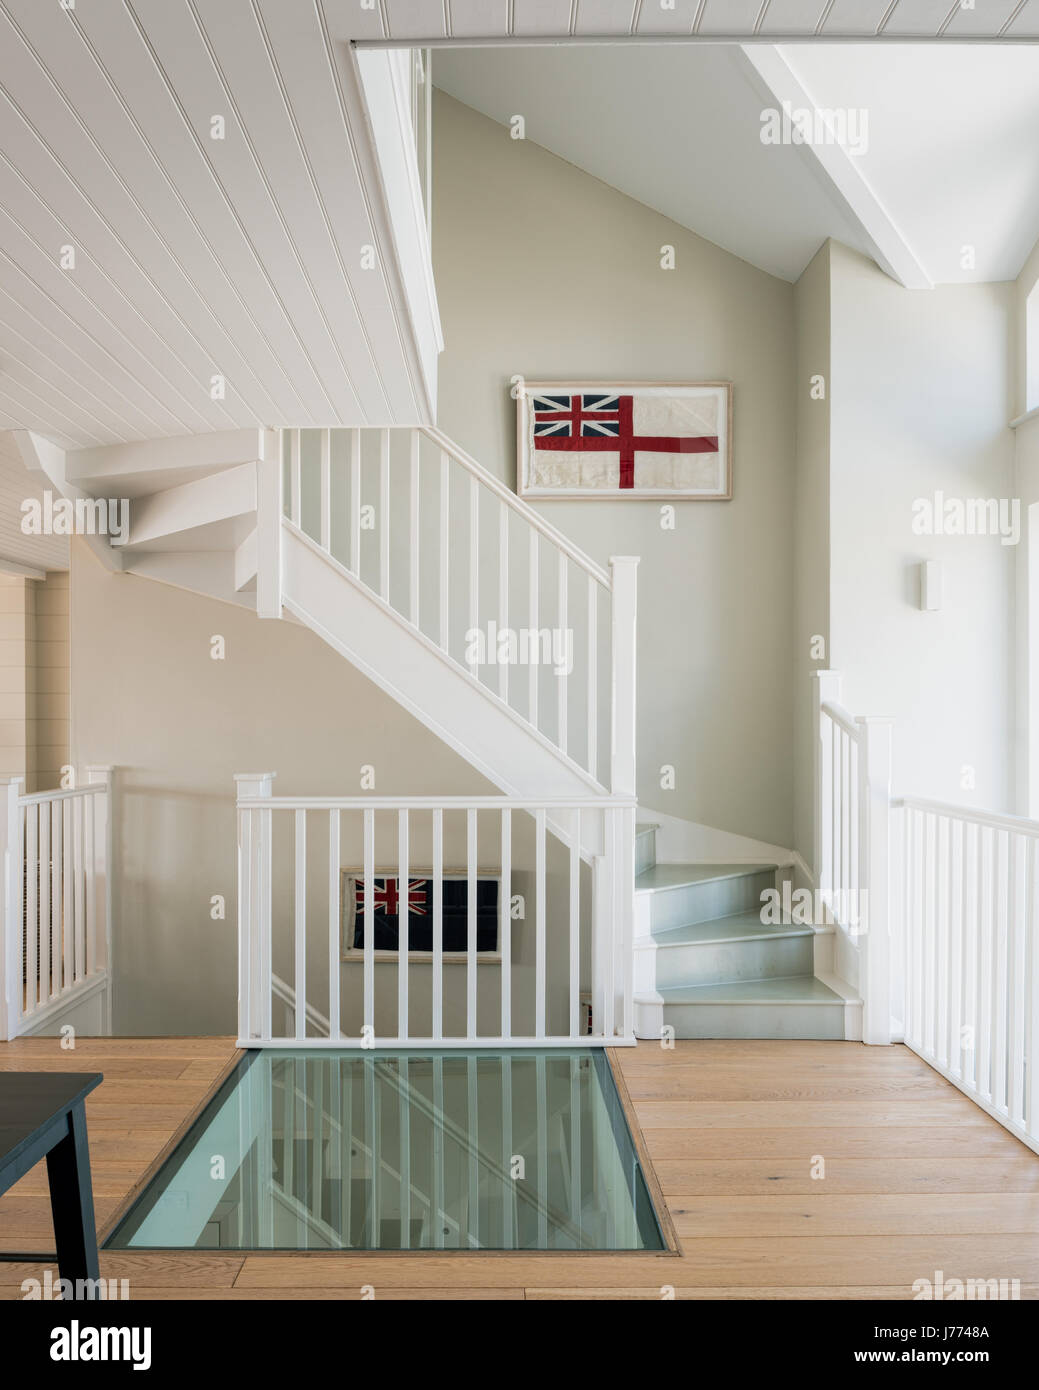 Pavimento in vetro su primi piani di sbarco con incorniciato vecchie bandiere britanniche lungo la scalinata. Le pareti sono dipinte in grigio del cappello da Sanderson. Foto Stock